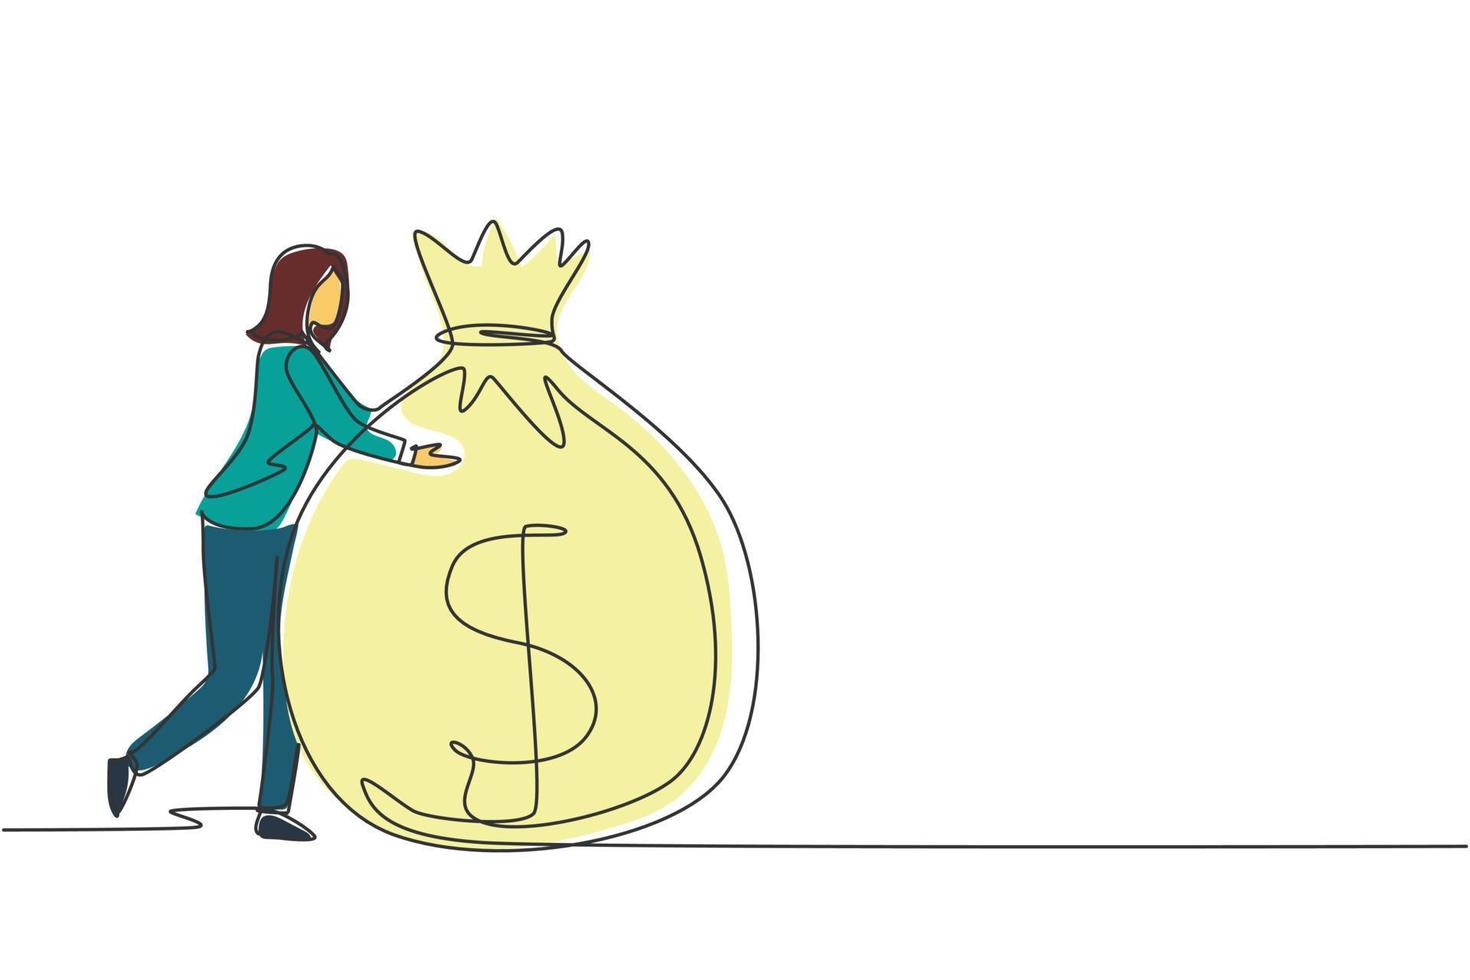 mujer de negocios de dibujo de una sola línea abrazando una gran bolsa de dinero. exito financiero. mujer de pie y abrazando una enorme bolsa de efectivo. idea creativa de ángel de negocios. ilustración de vector de diseño de dibujo de línea continua